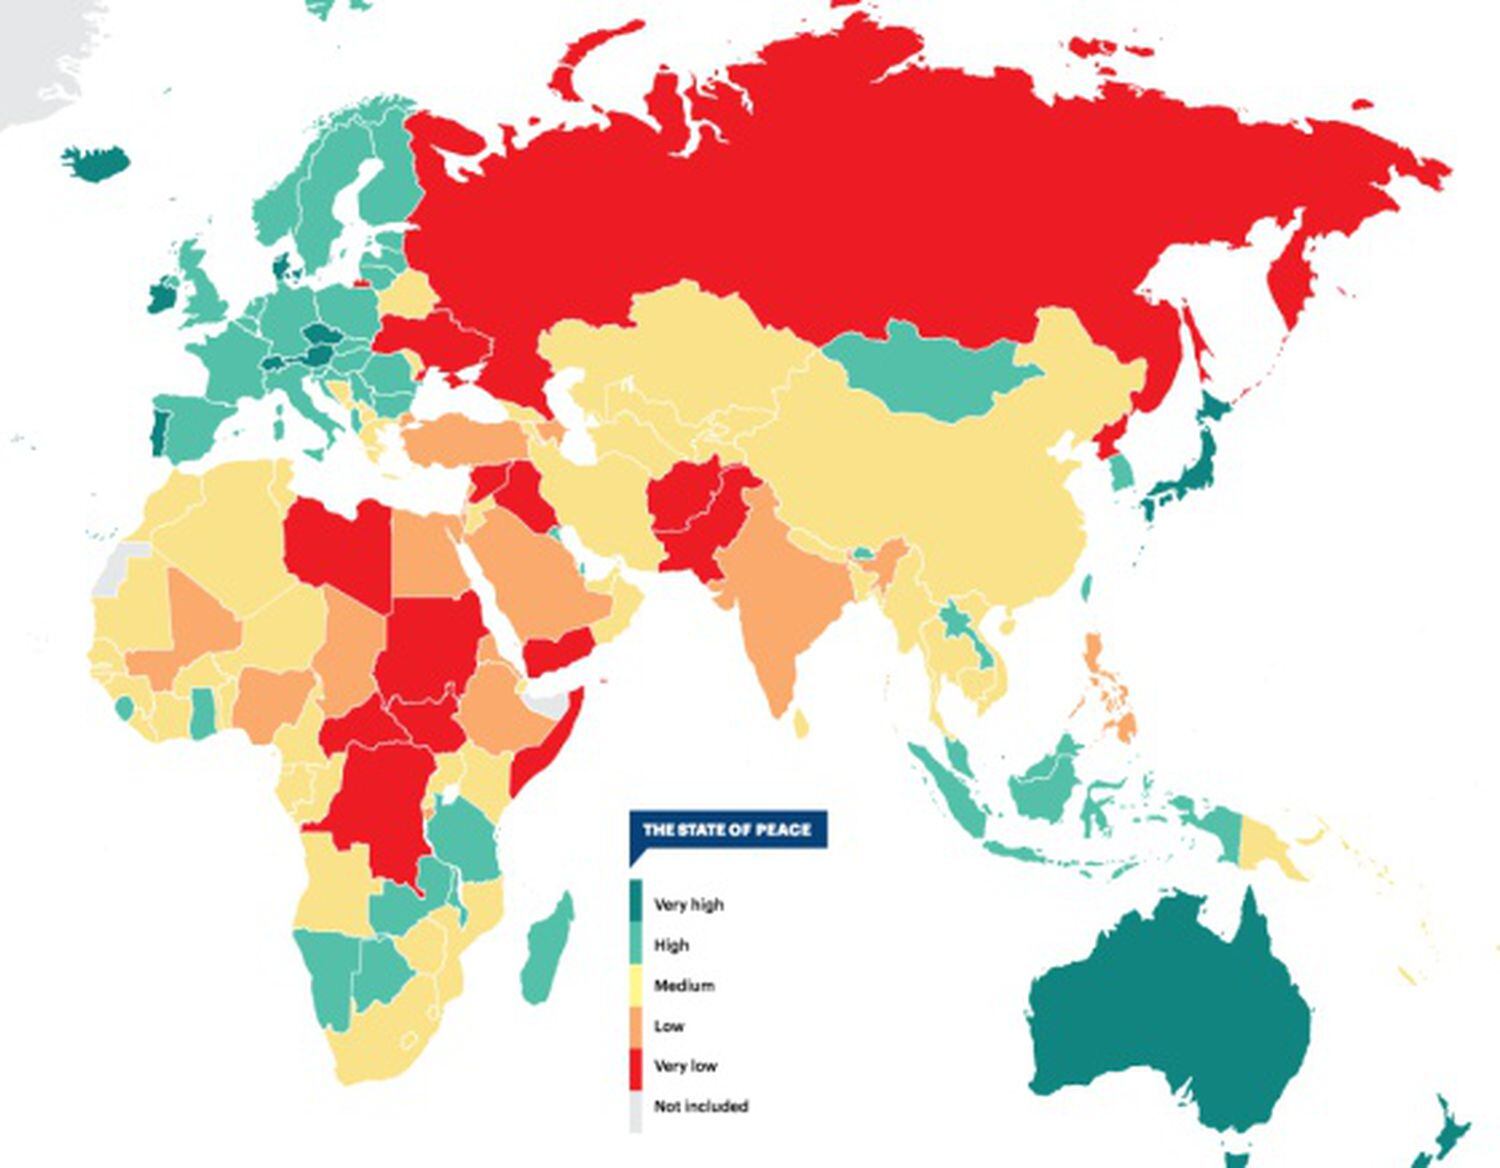 Mapa da paz global do Instituto para a Economia e a Paz. Os países em verde são os mais pacíficos. Clique para ir ao estudo.